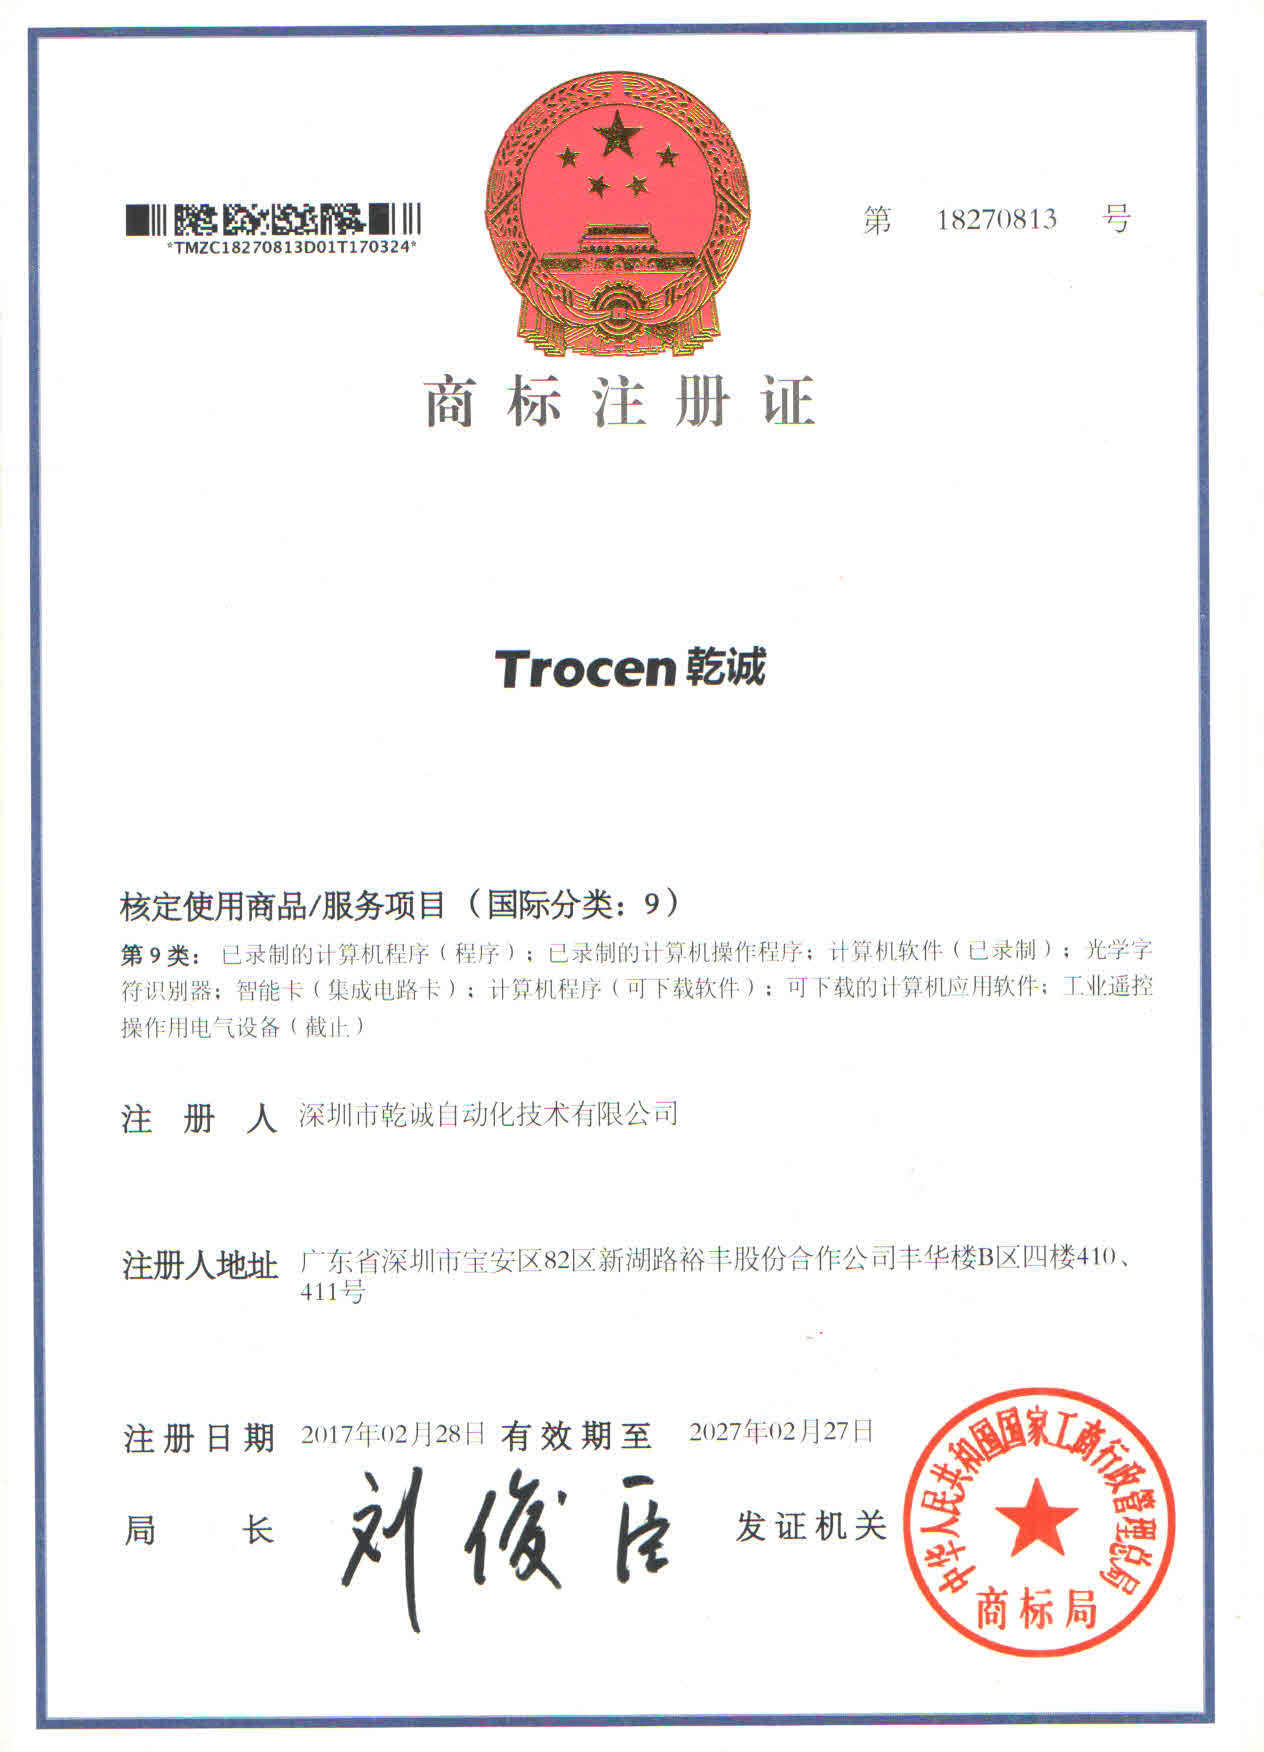 Trocen has been registered state trademark